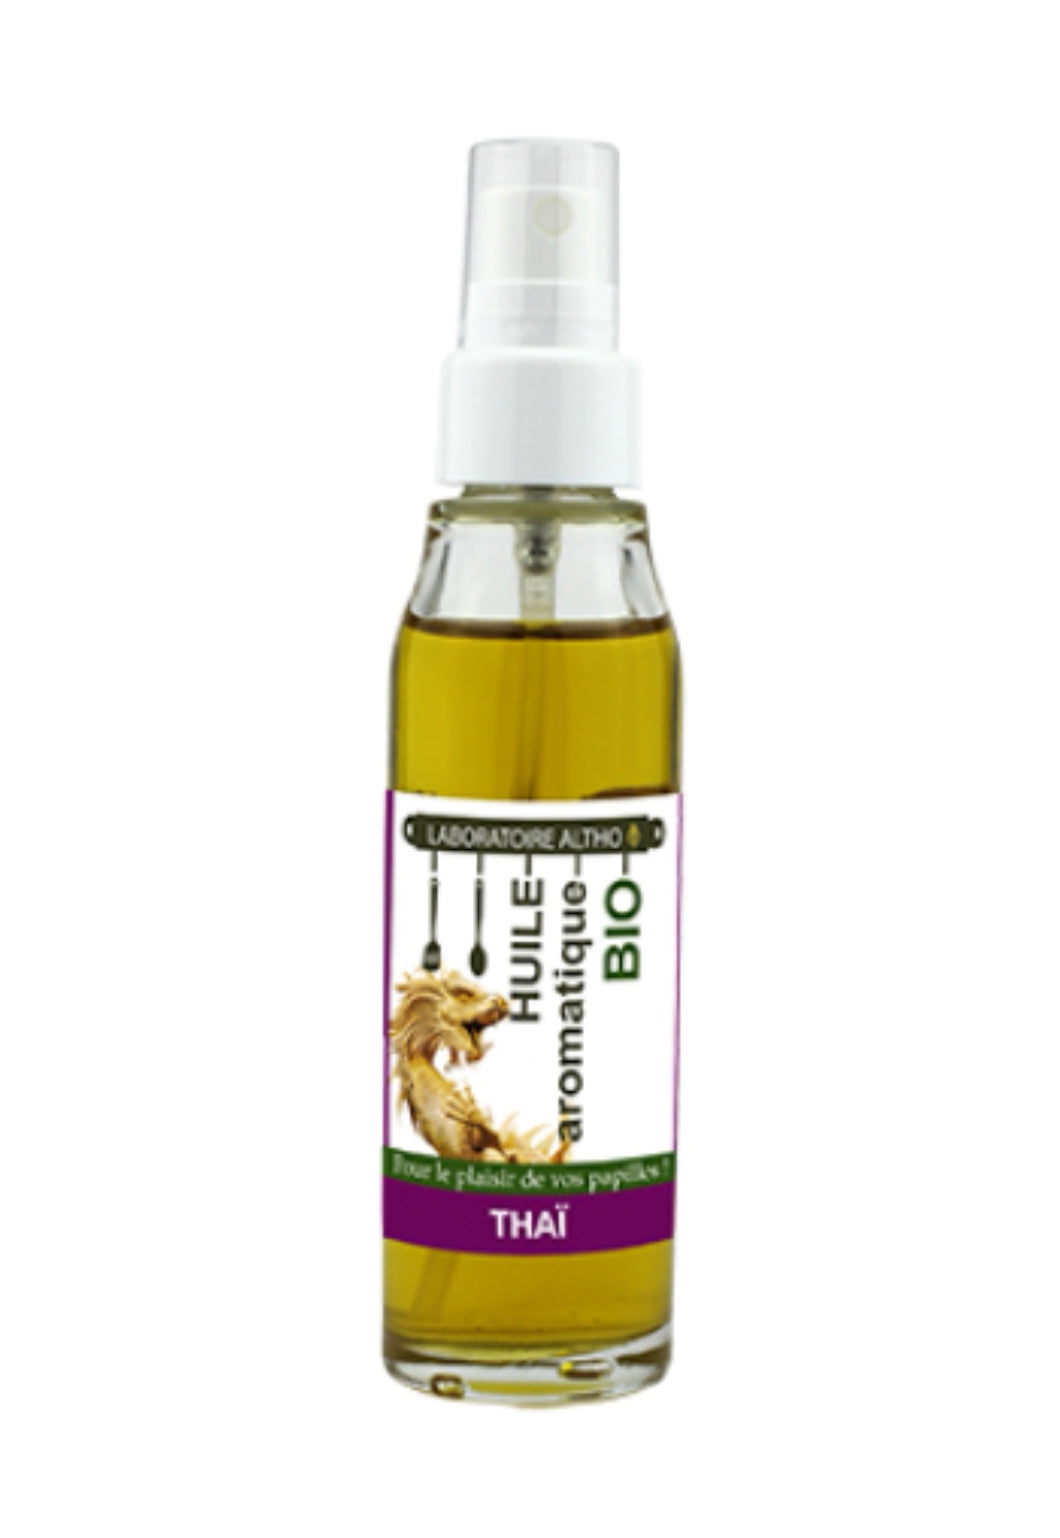 Thai - Organic Cooking Oil 50ml